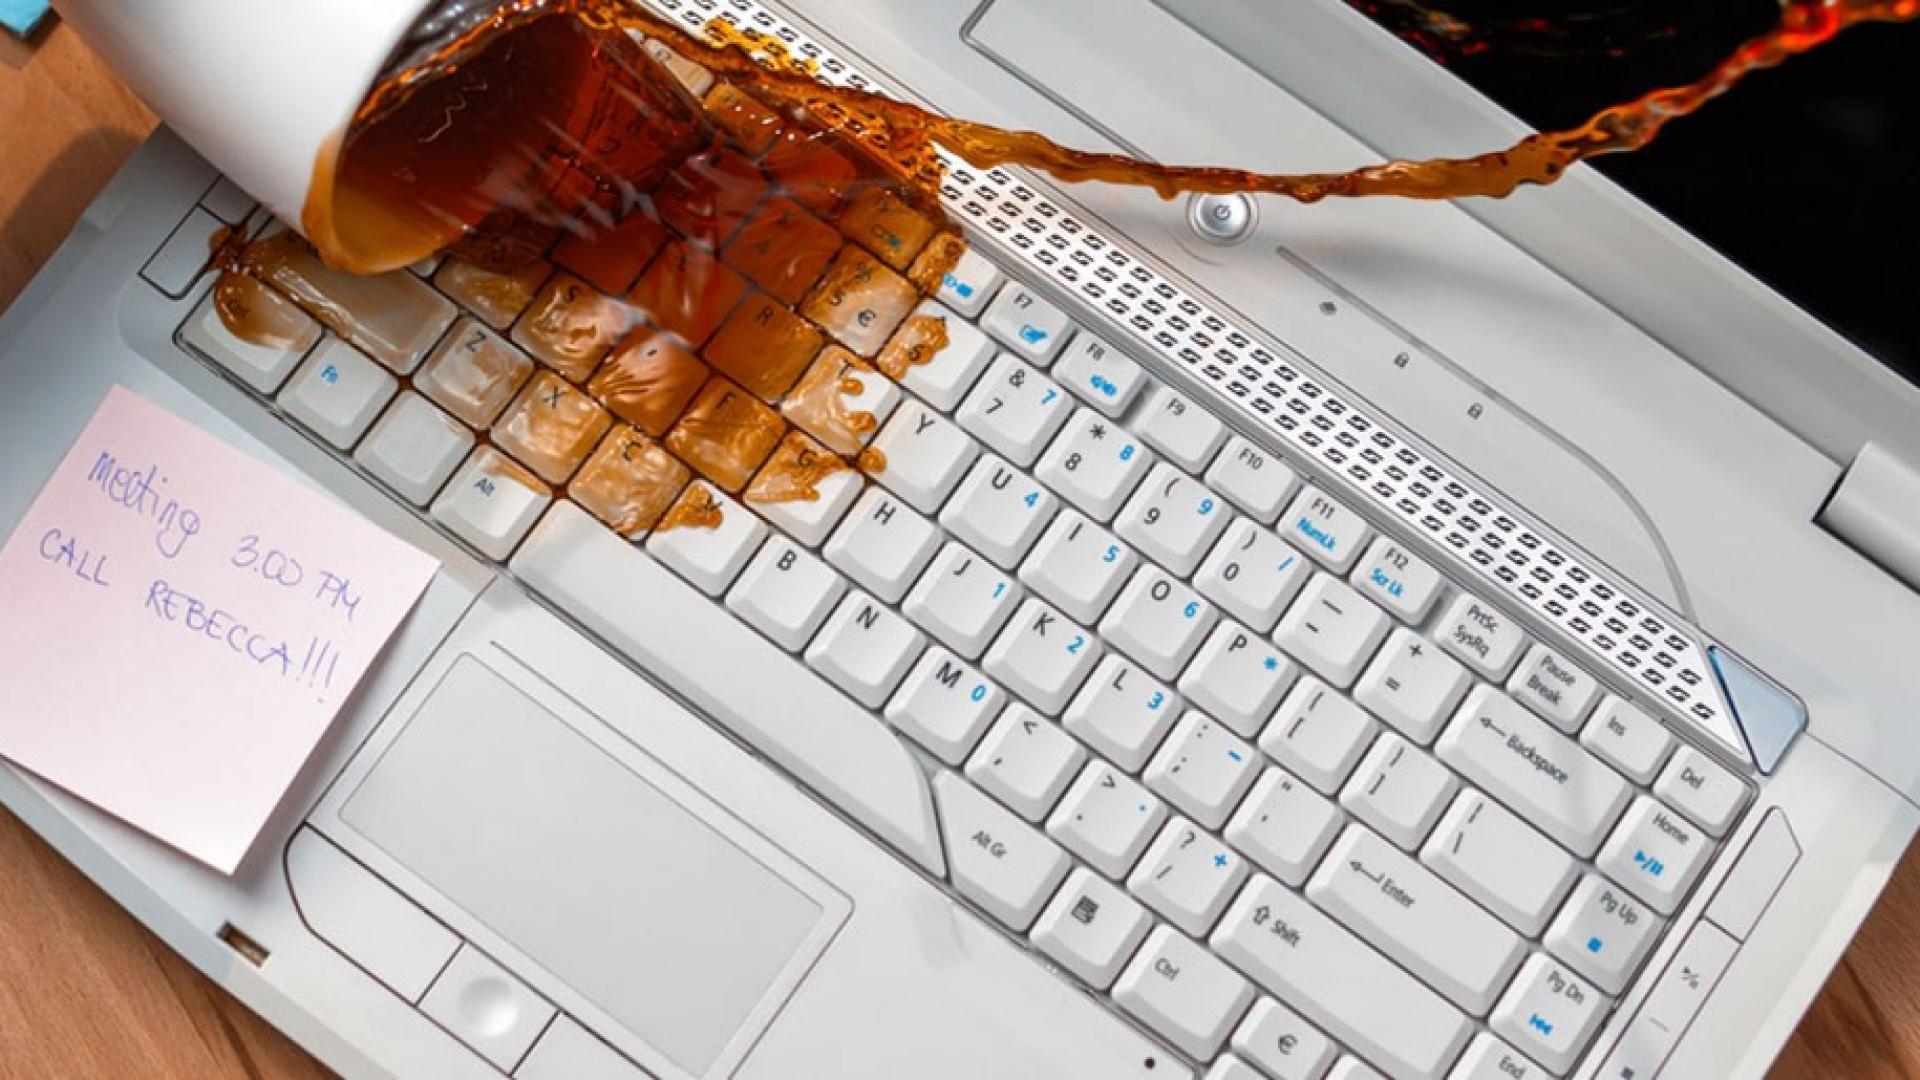 Ein voller Kaffebecher stürzt auf eine Laptoptastatur